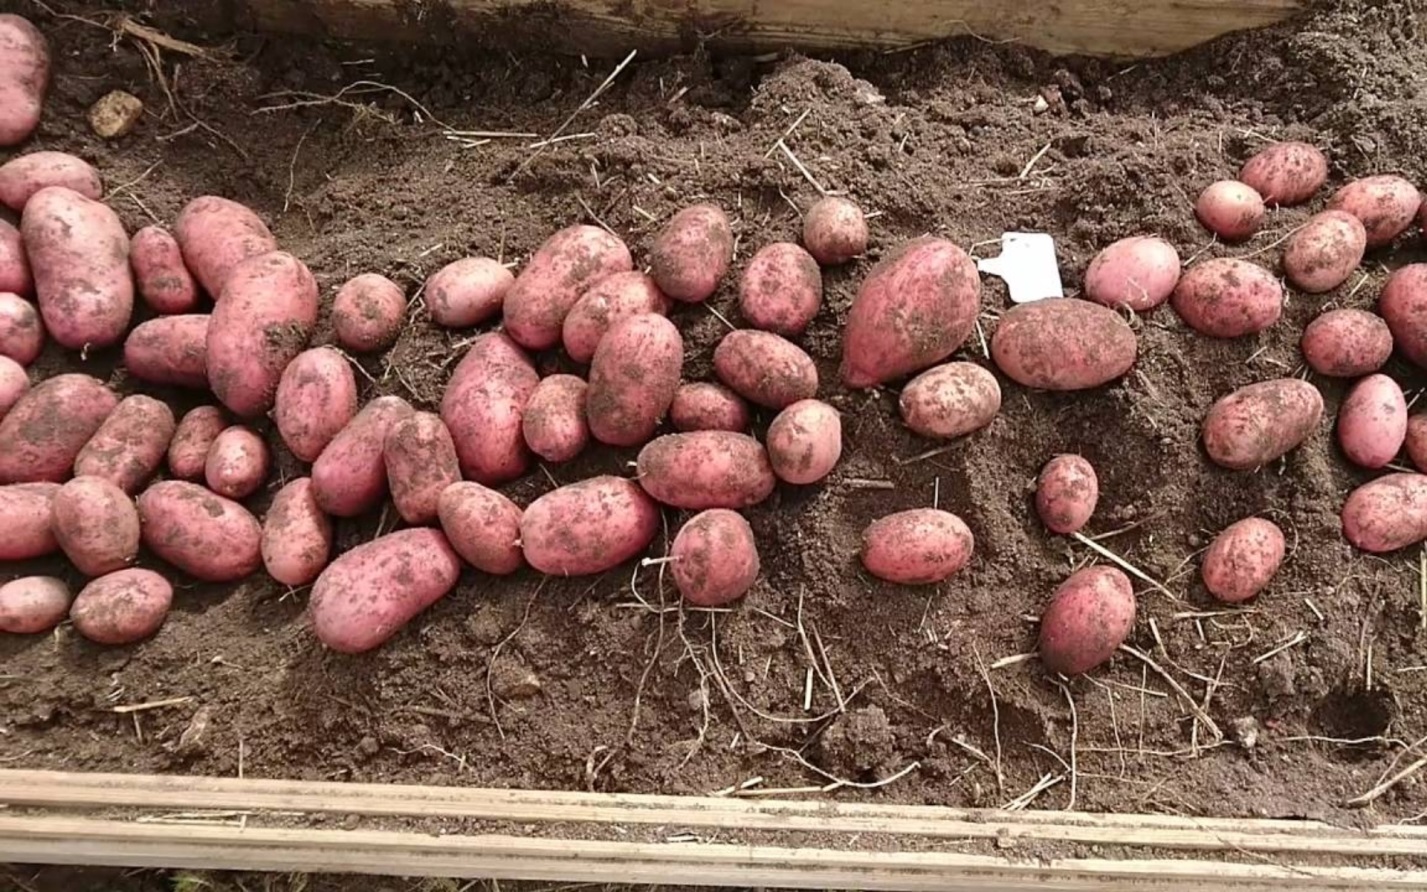 Белорусские сорта картофеля: характеристика и описание, ранние и поздние сорта, фото